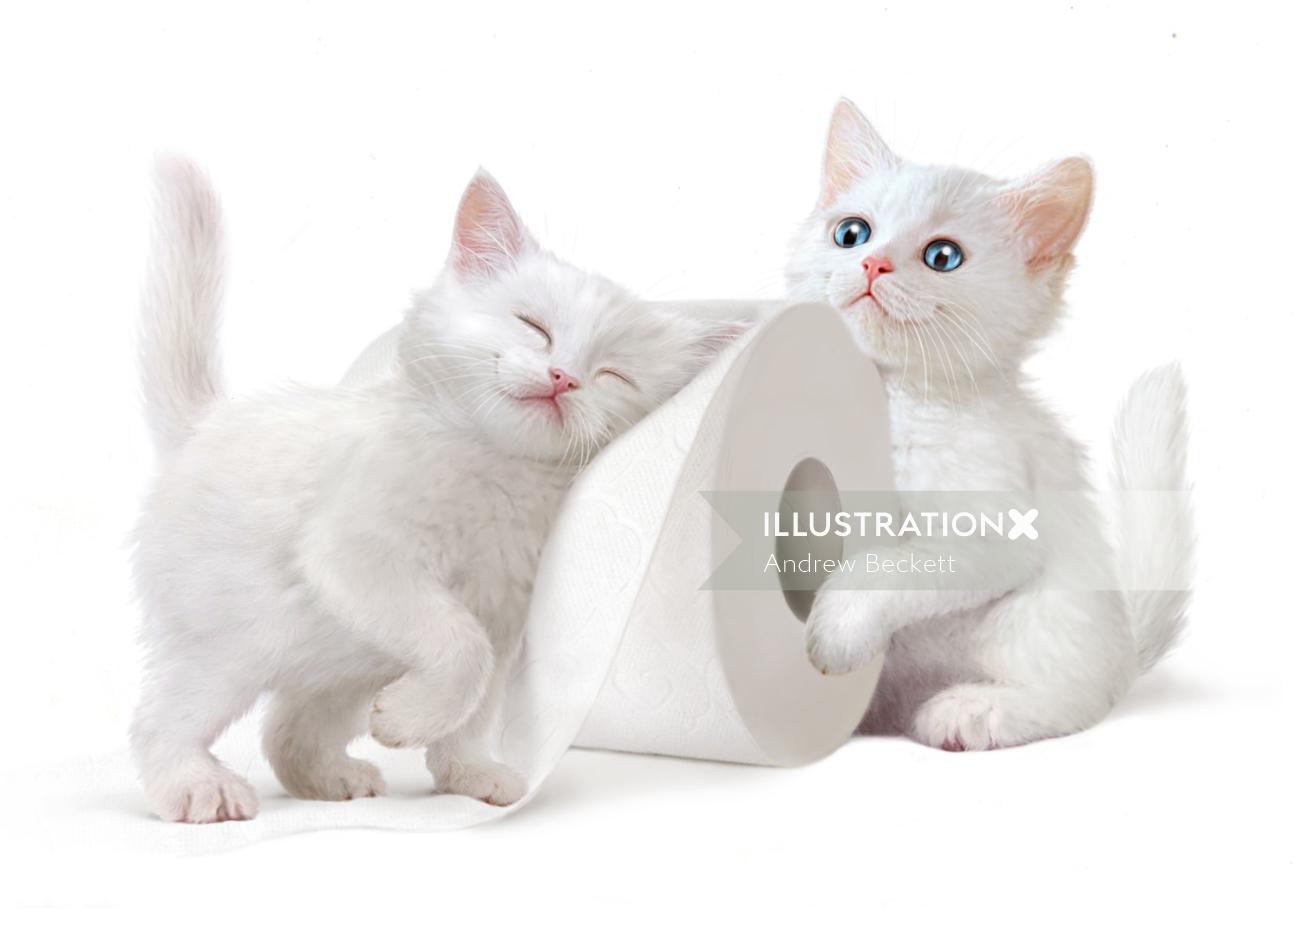 Illustration for popular KittenSoft toilet tissue packaging